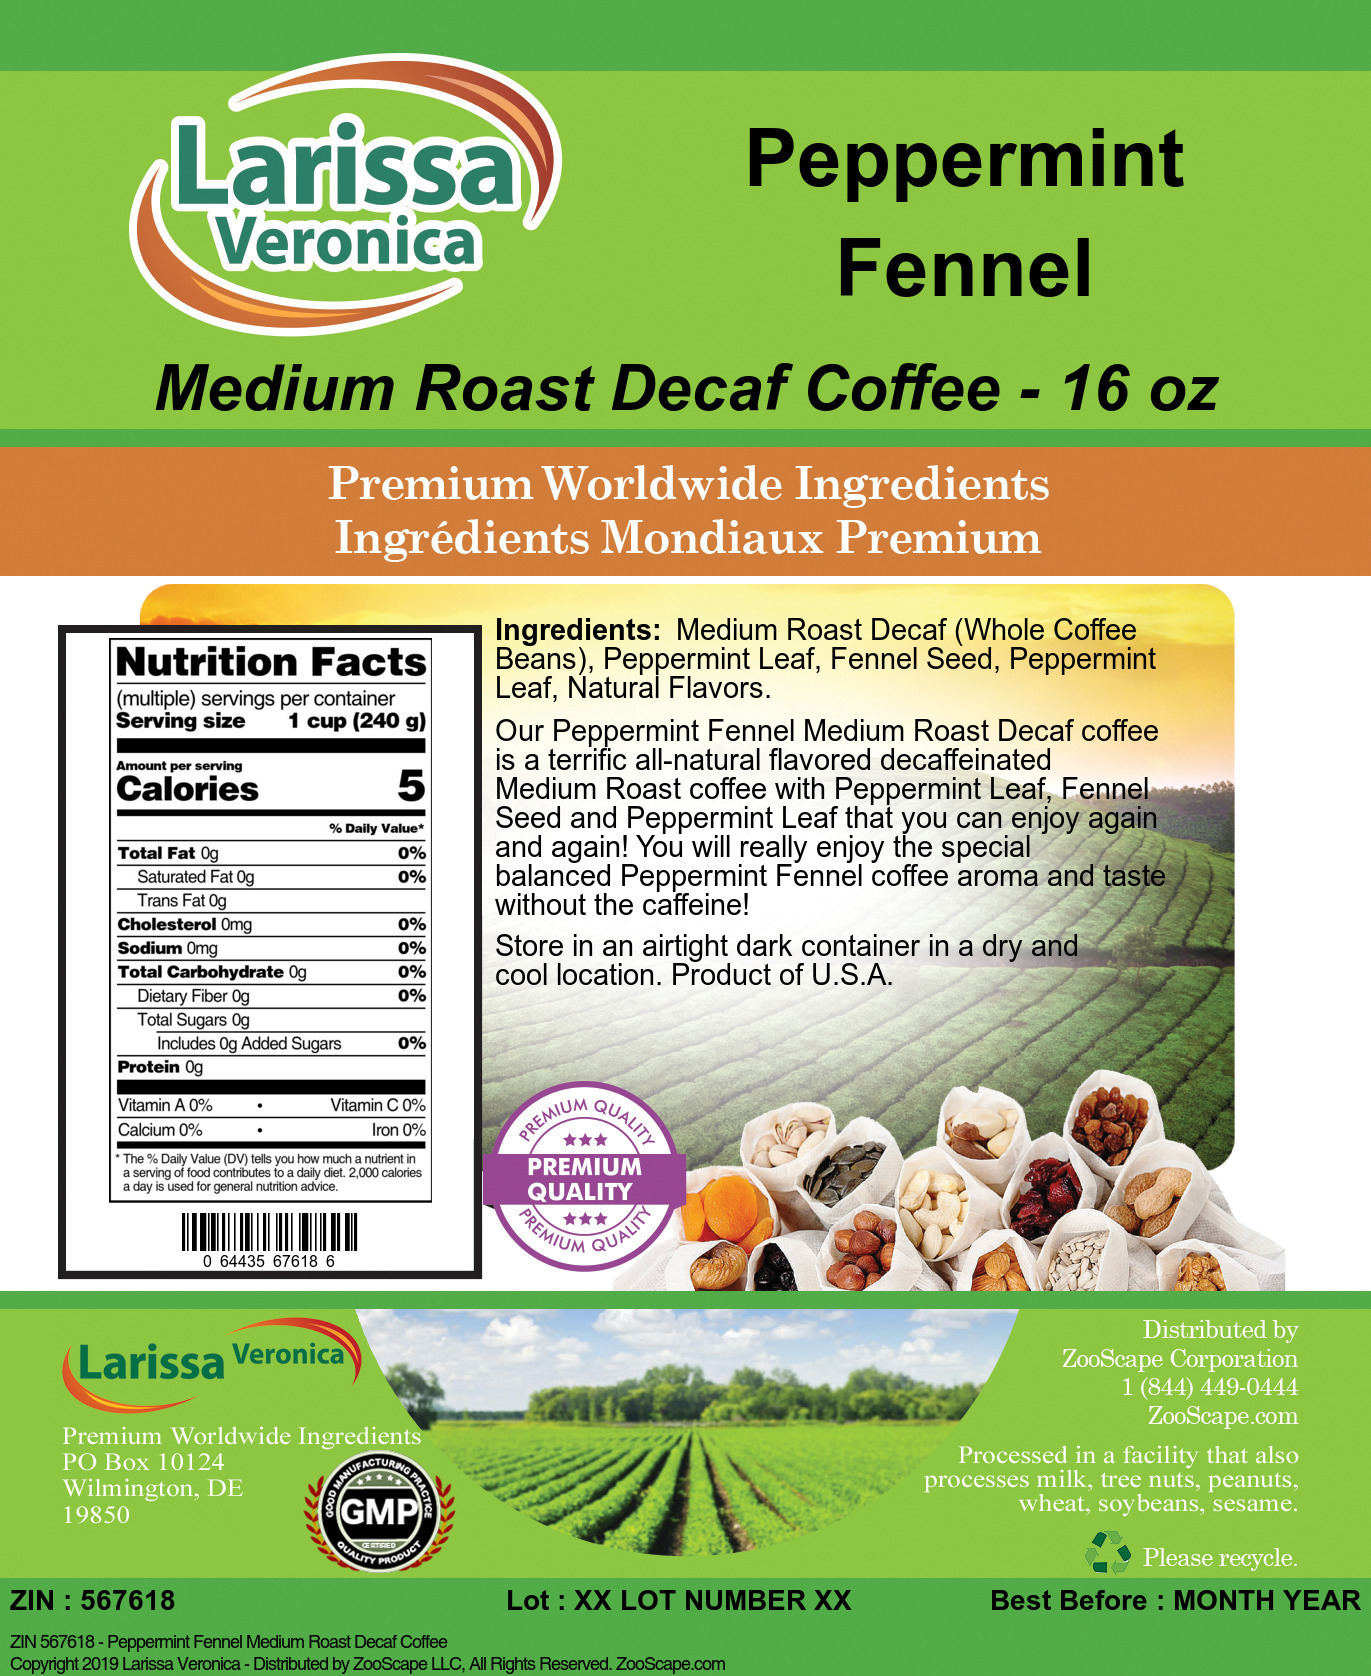 Peppermint Fennel Medium Roast Decaf Coffee - Label